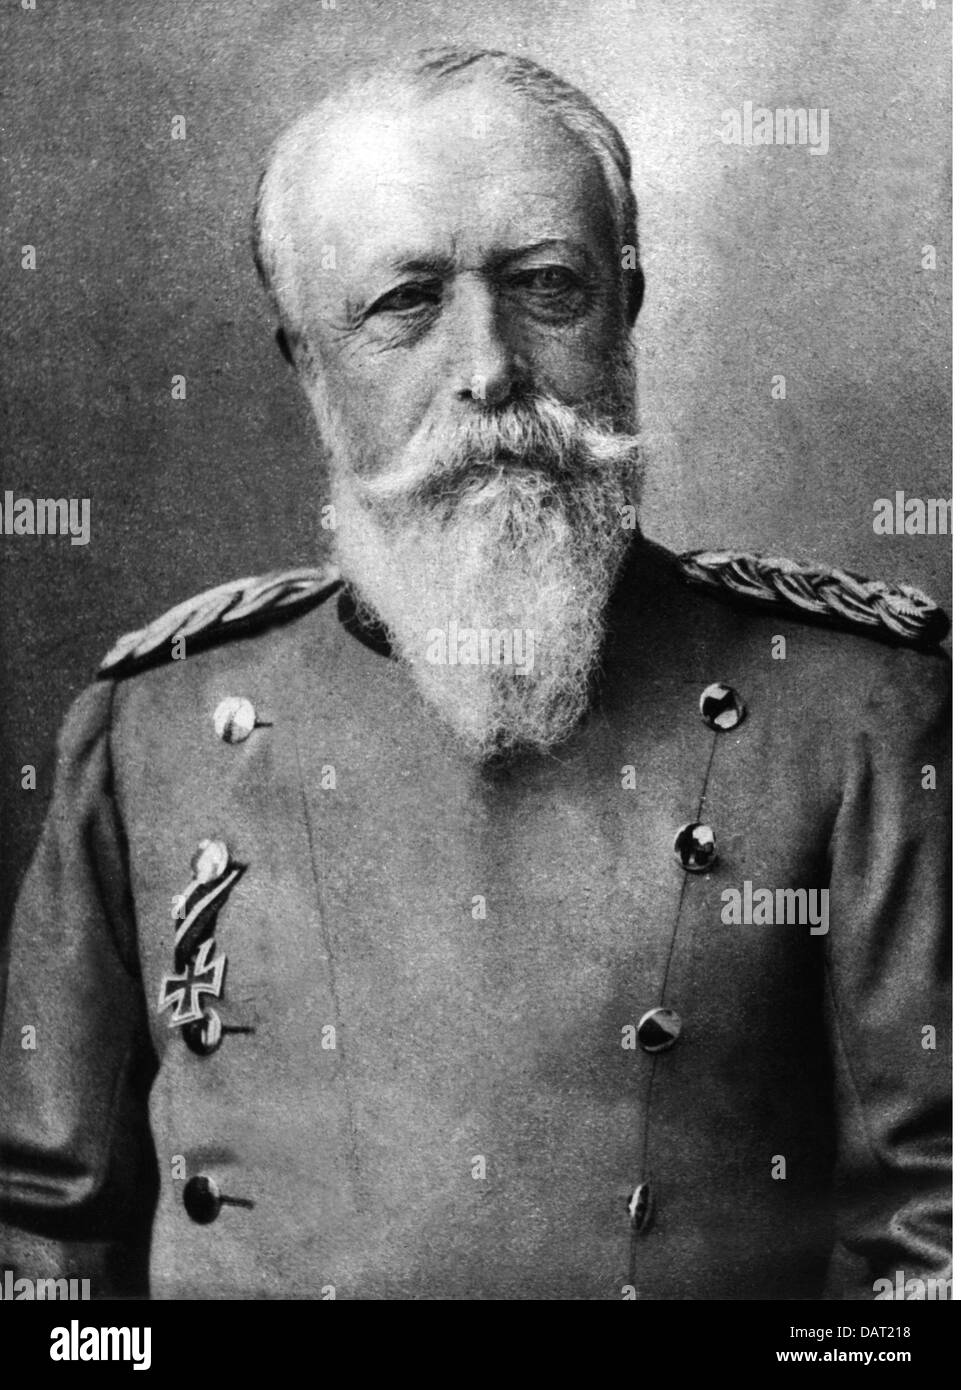 Frederick I, 9.9.1826 - 28.9.1907, Grand Duke of Baden 5.9.1856 - 28.9.1907, portrait, circa 1900, Stock Photo